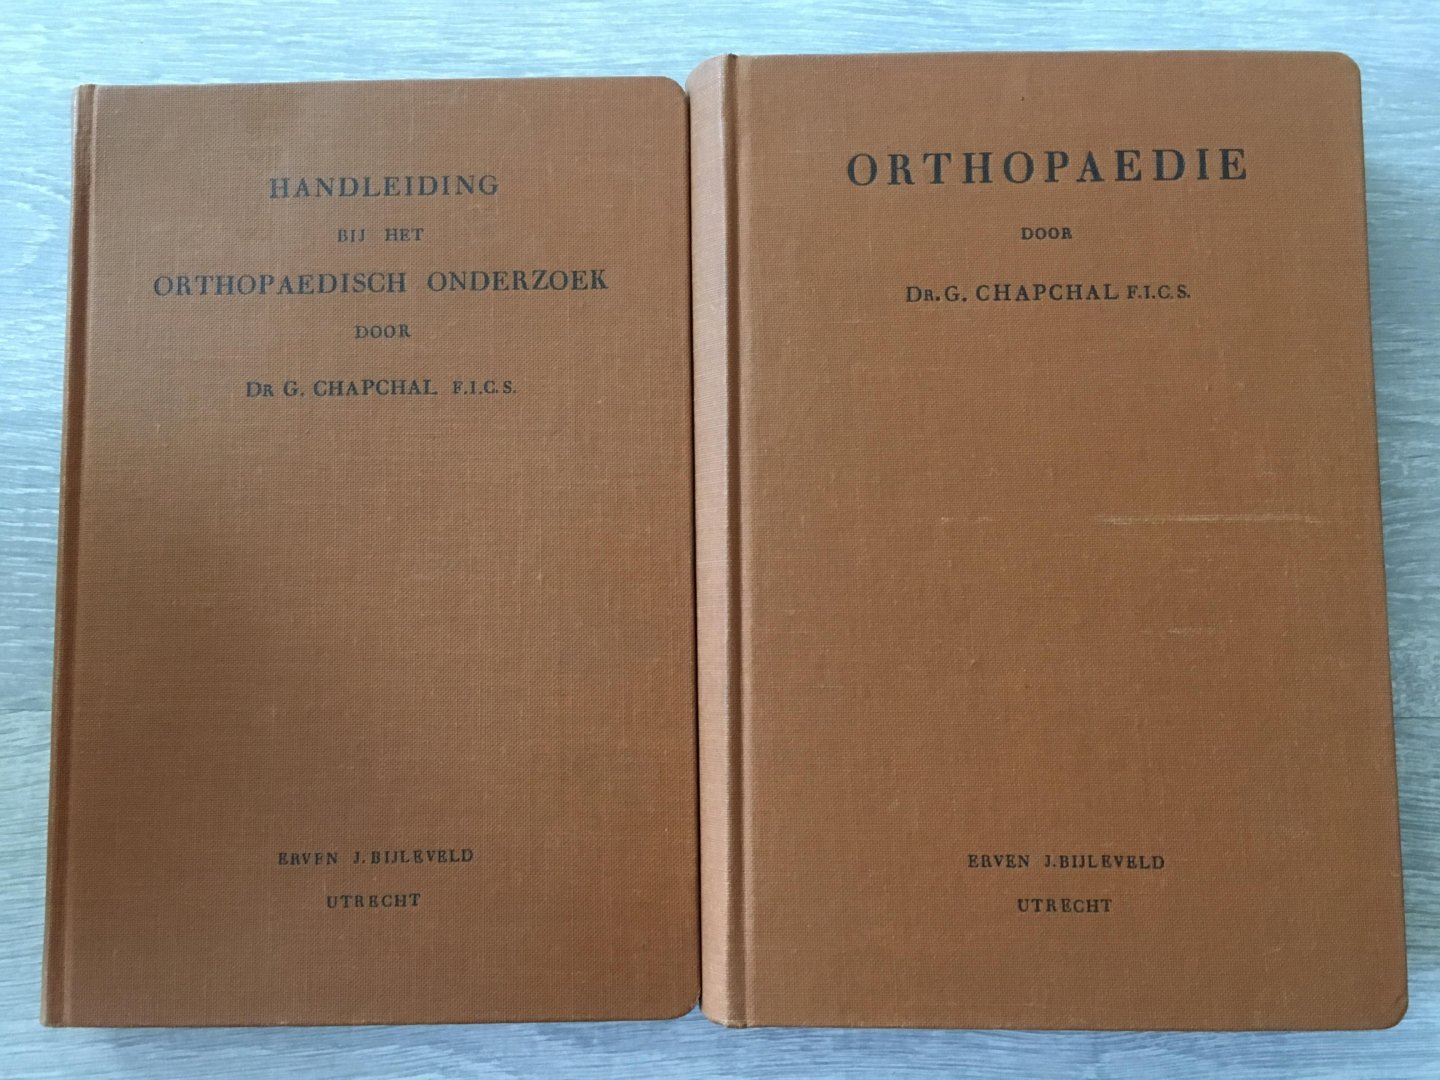 Dr. G. Chapchal F.I.C.S - Twee delen; Orthopaedie samen met & Handleiding bij het orthopaedisch onderzoek door Dr. G. Chapchal F.I.C.S